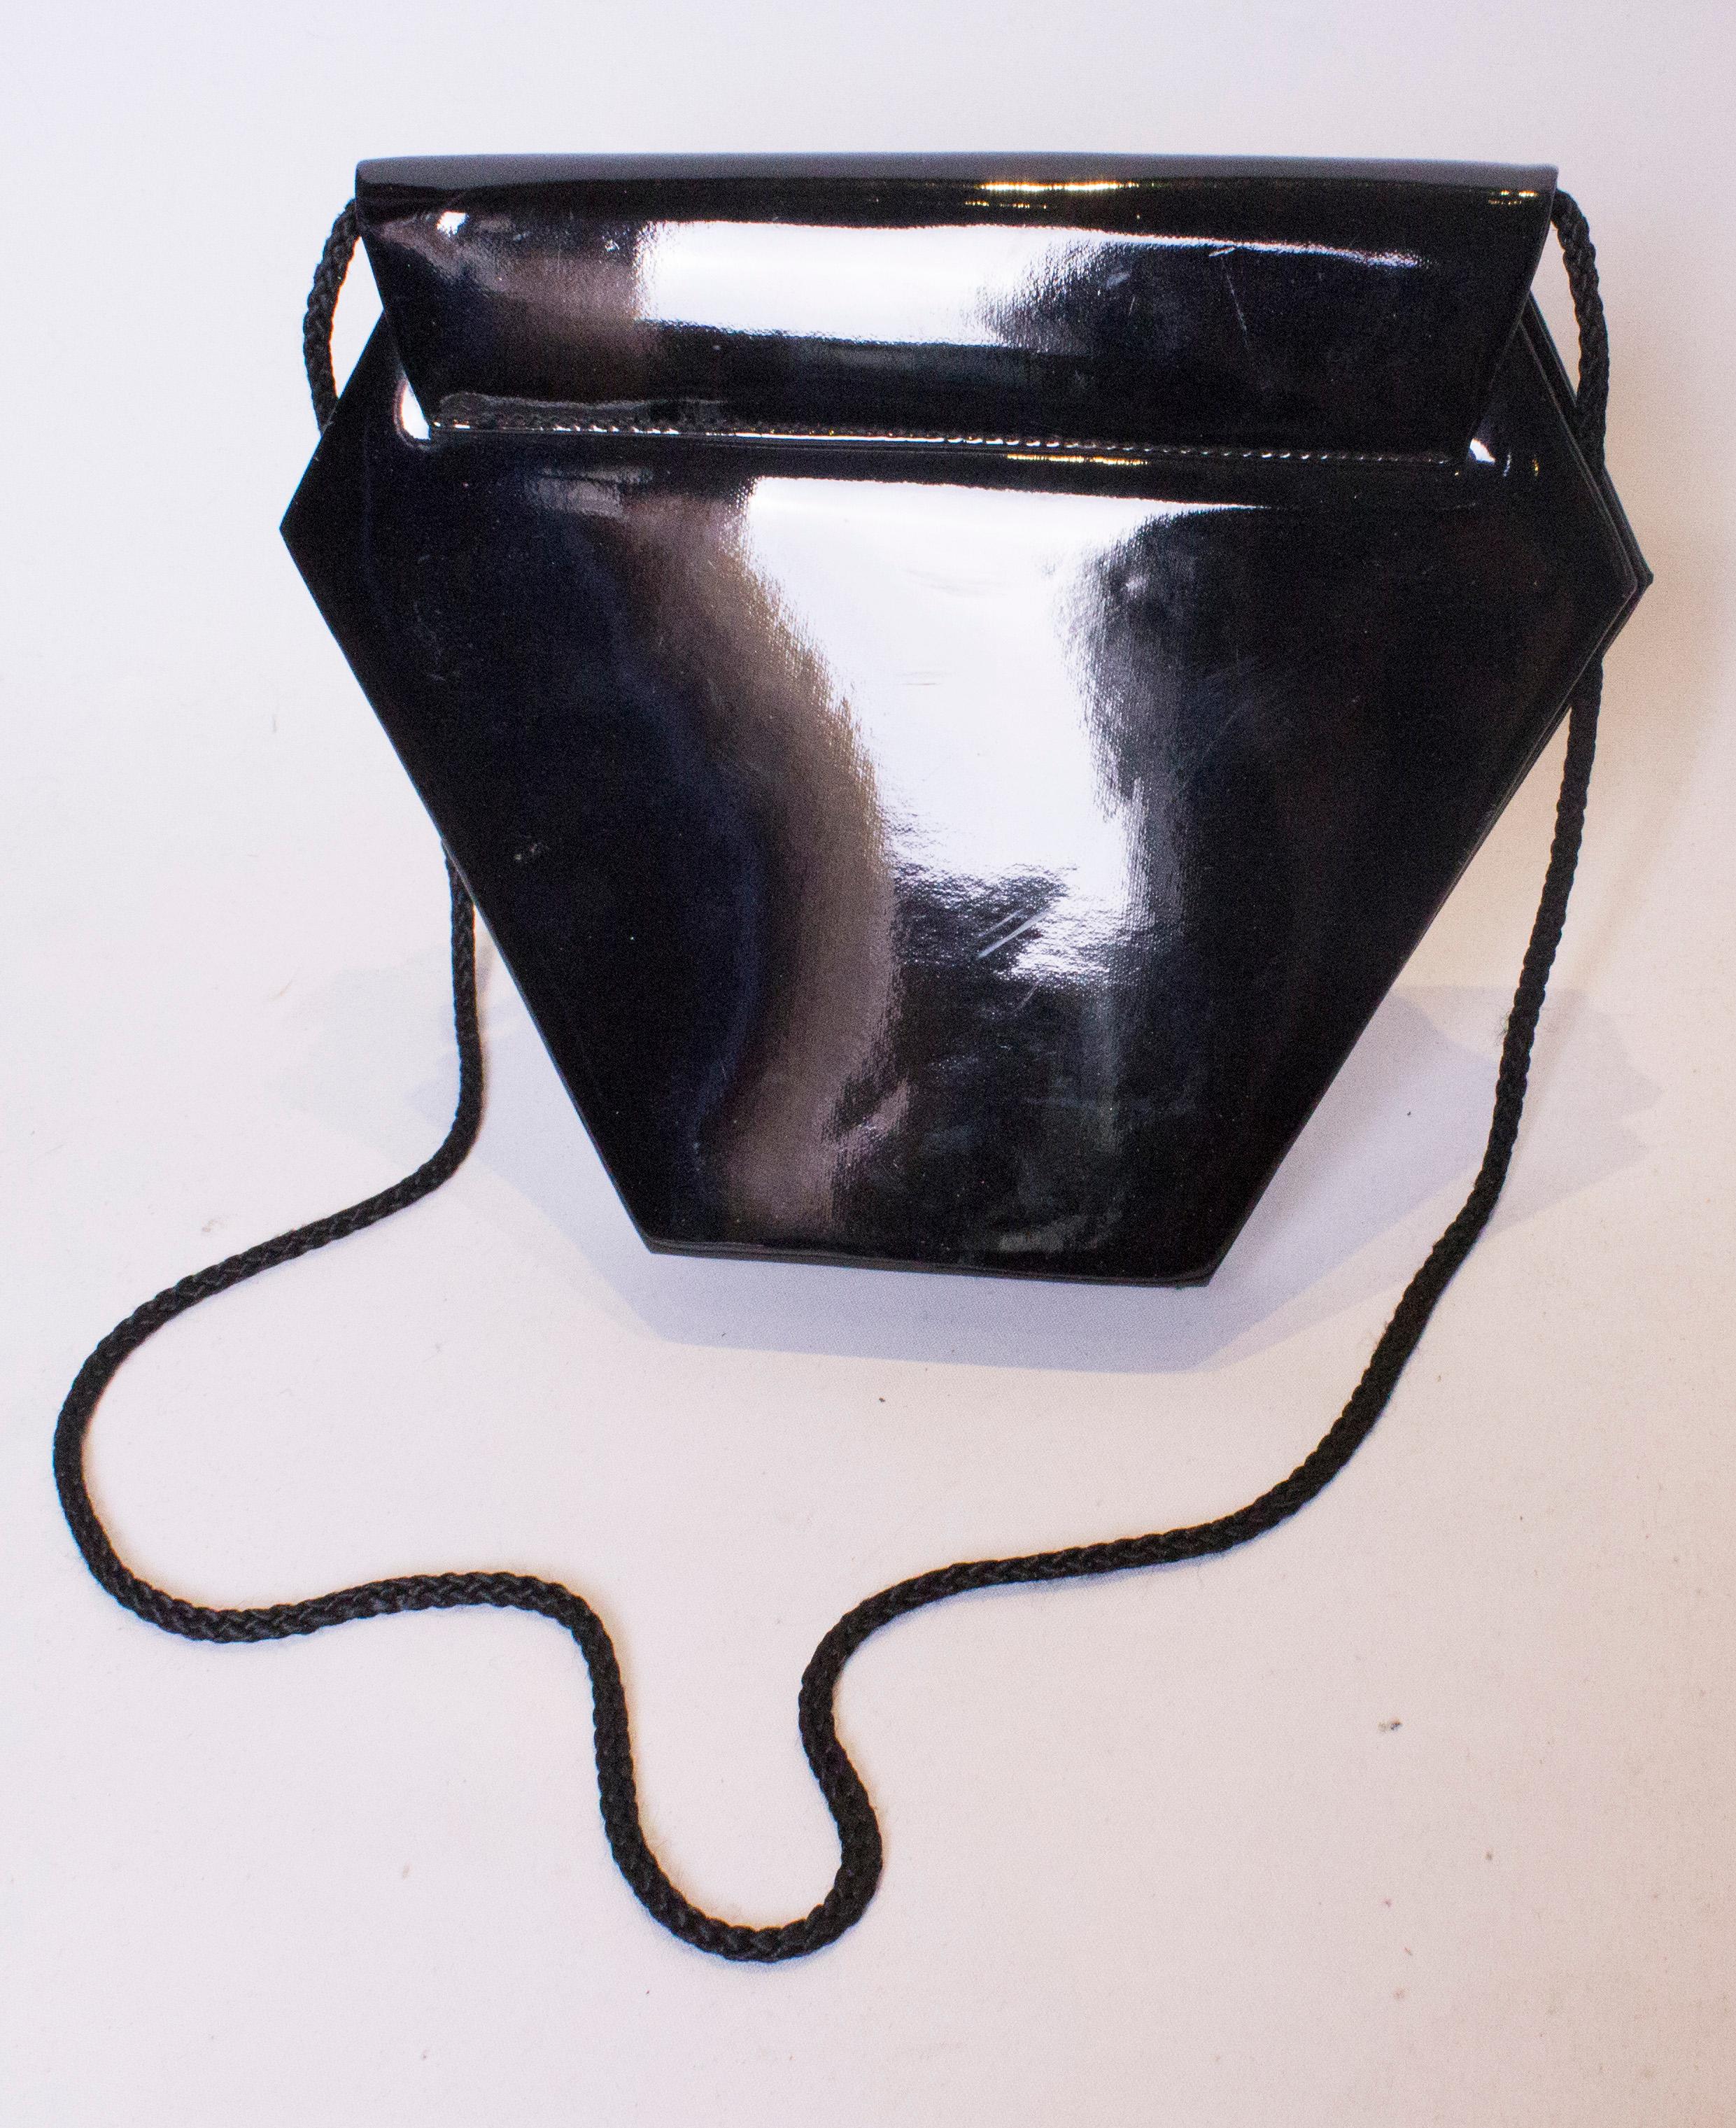 Eine ungewöhnliche schwarze Lacktasche in Hexaganalform. Die Tasche hat eine Klappe auf der Vorderseite mit Druckknopfverschluss, eine Innentasche und einen Schulterriemen mit Seil.